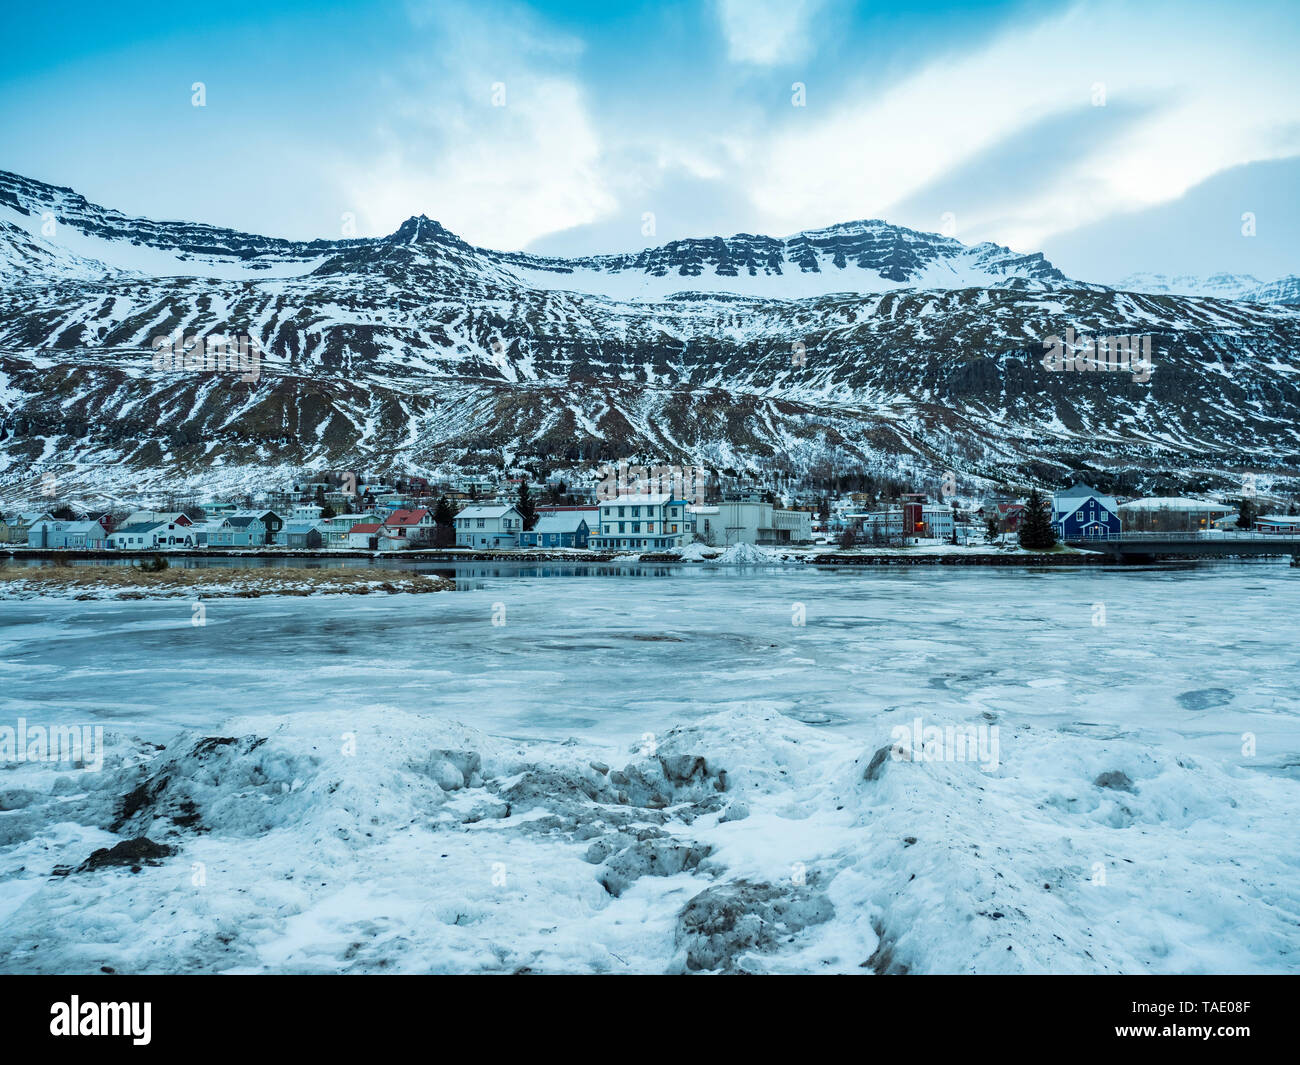 Islandia, Fjardara, lugar de descanso de la junta con las montañas de las que en invierno con el hielo y la nieve. Foto de stock